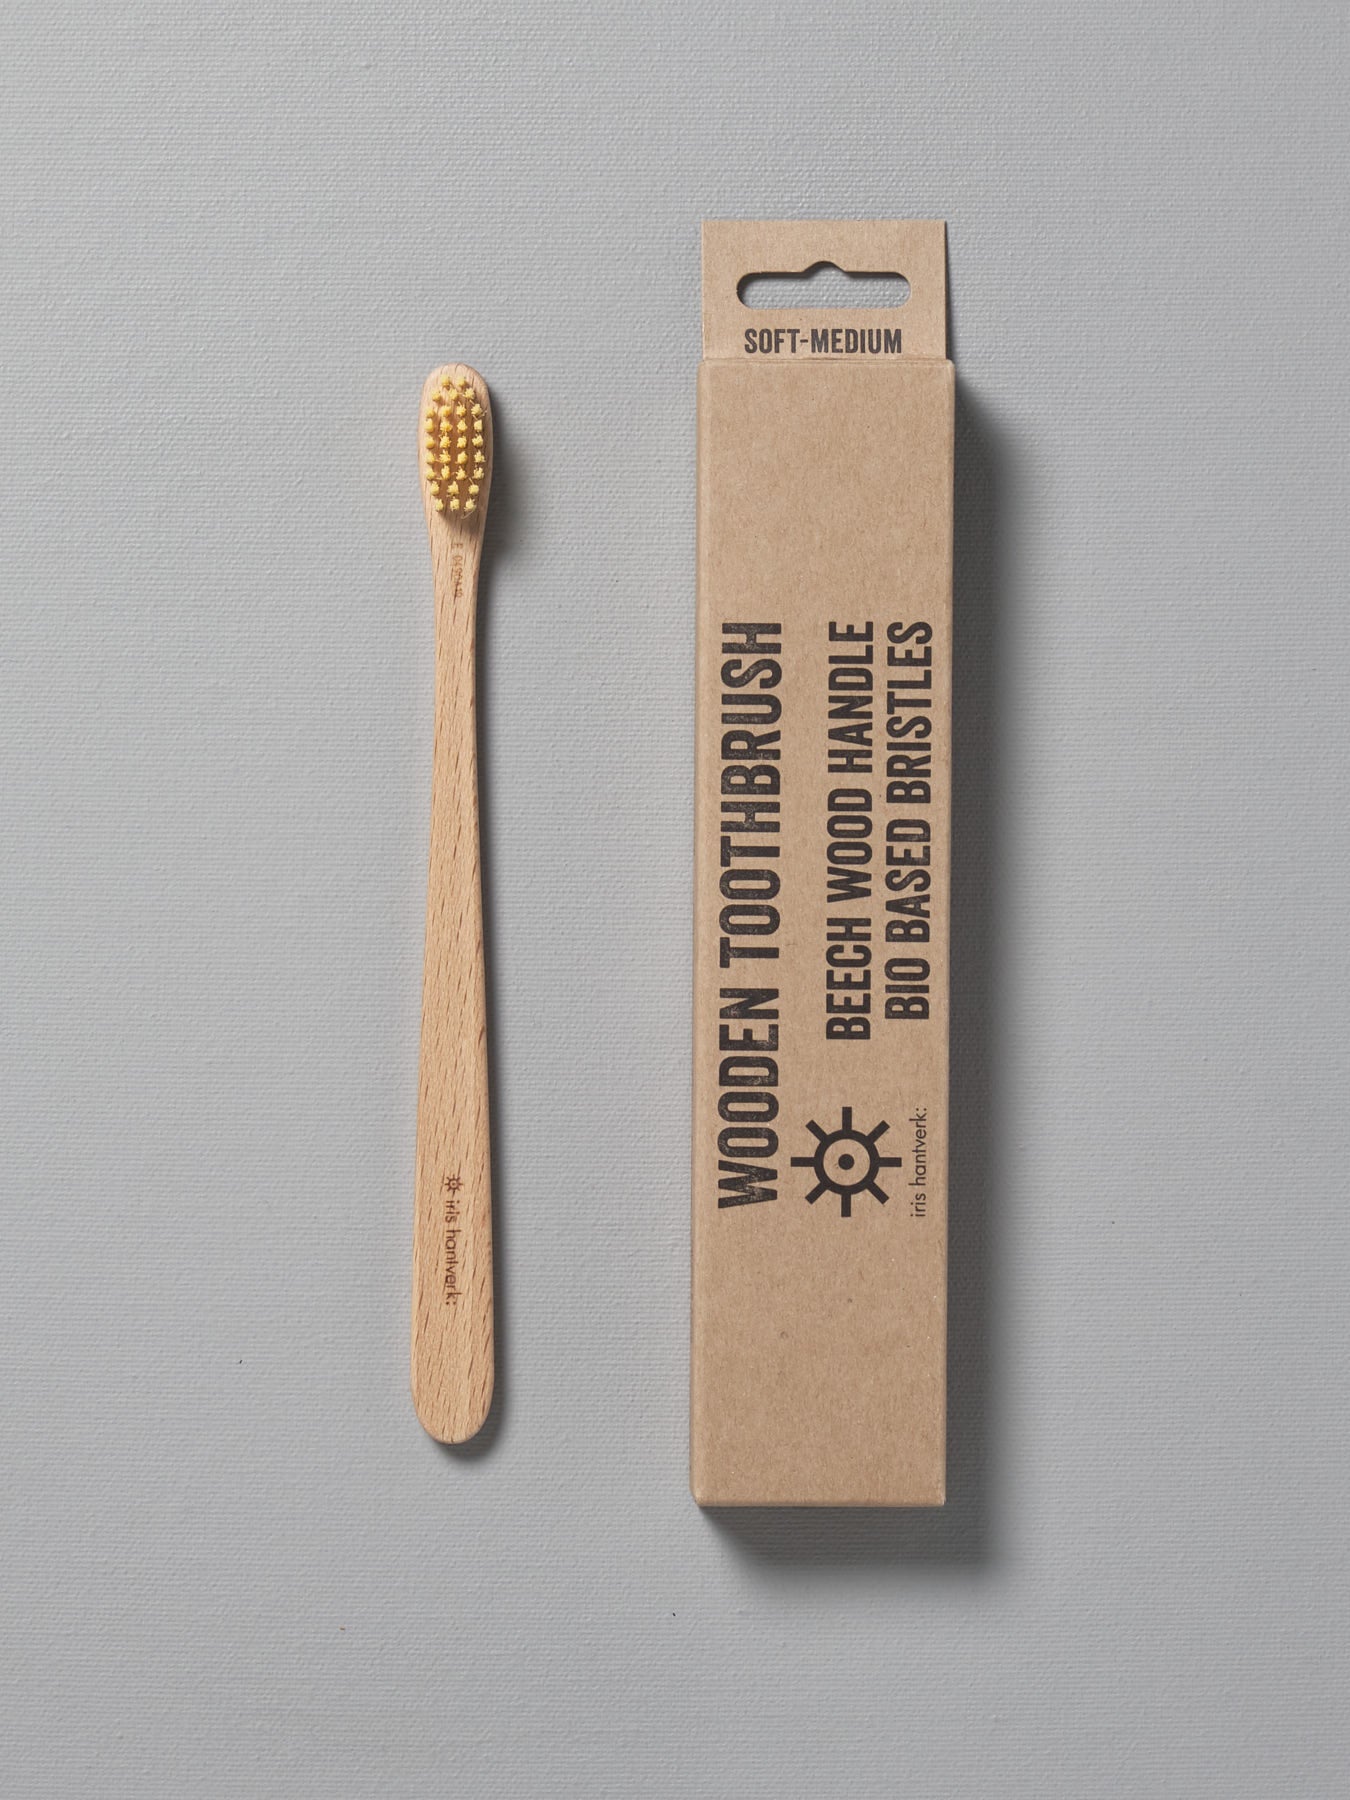 A wooden Iris Hantverk toothbrush next to a cardboard box.